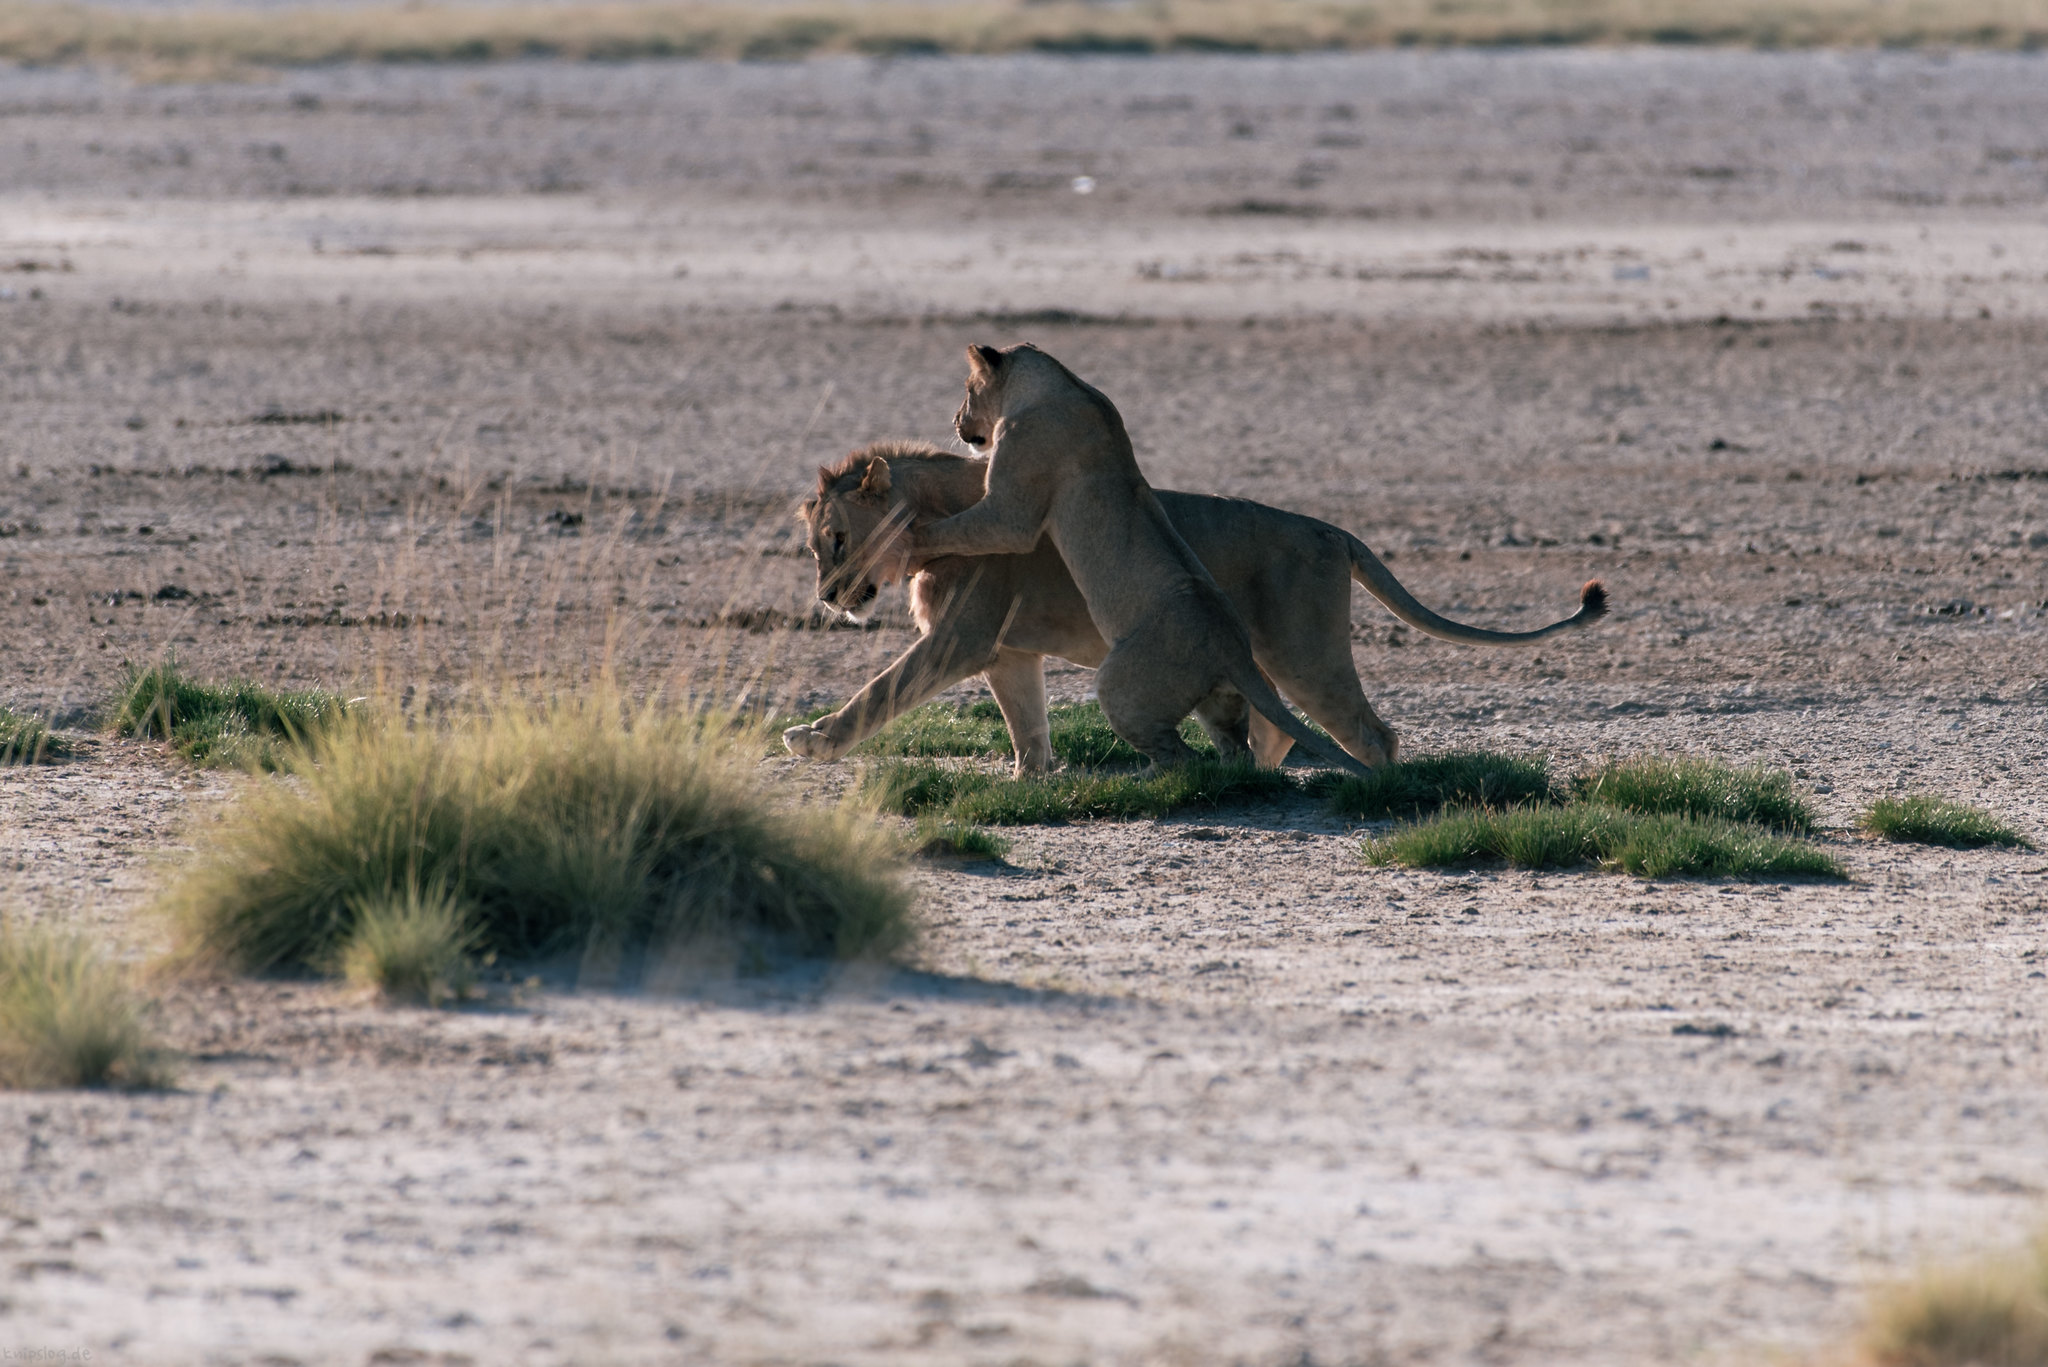 Namibia safari tour